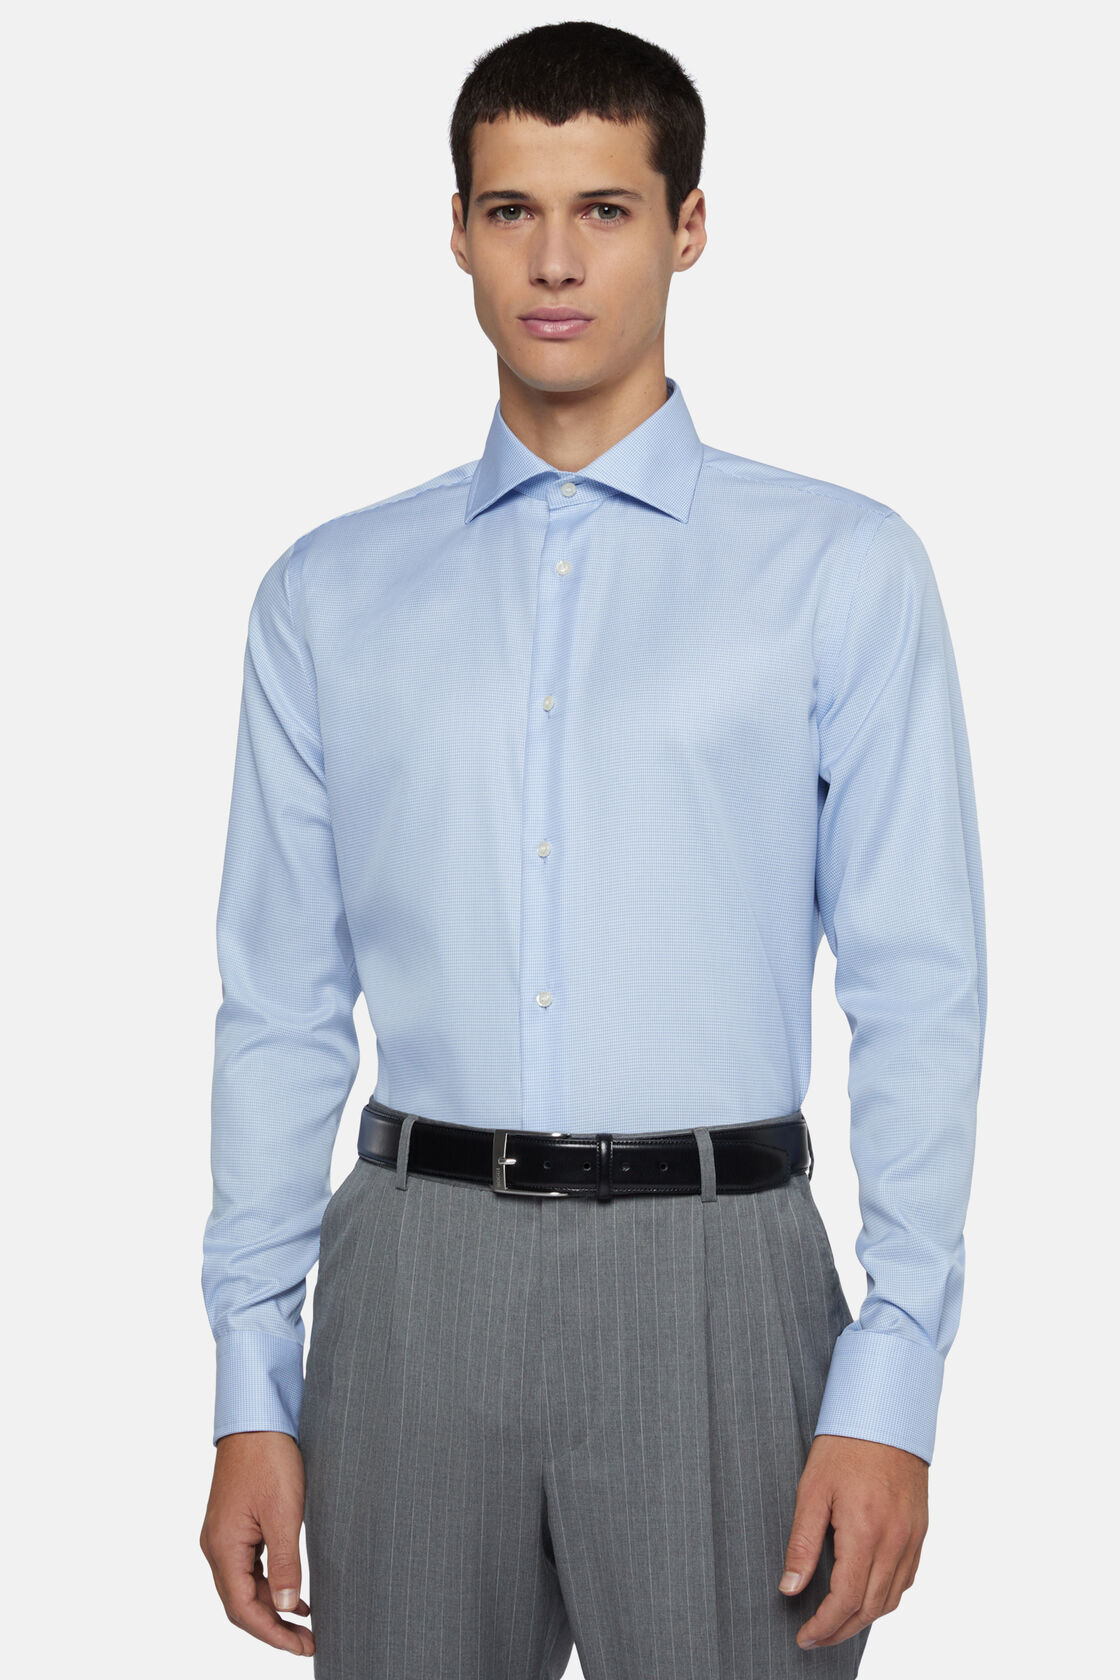 Σιέλ βαμβακερό πουκάμισο με πιε ντε πουλ μοτίβο, κανονικής εφαρμογής, Light Blue, hi-res